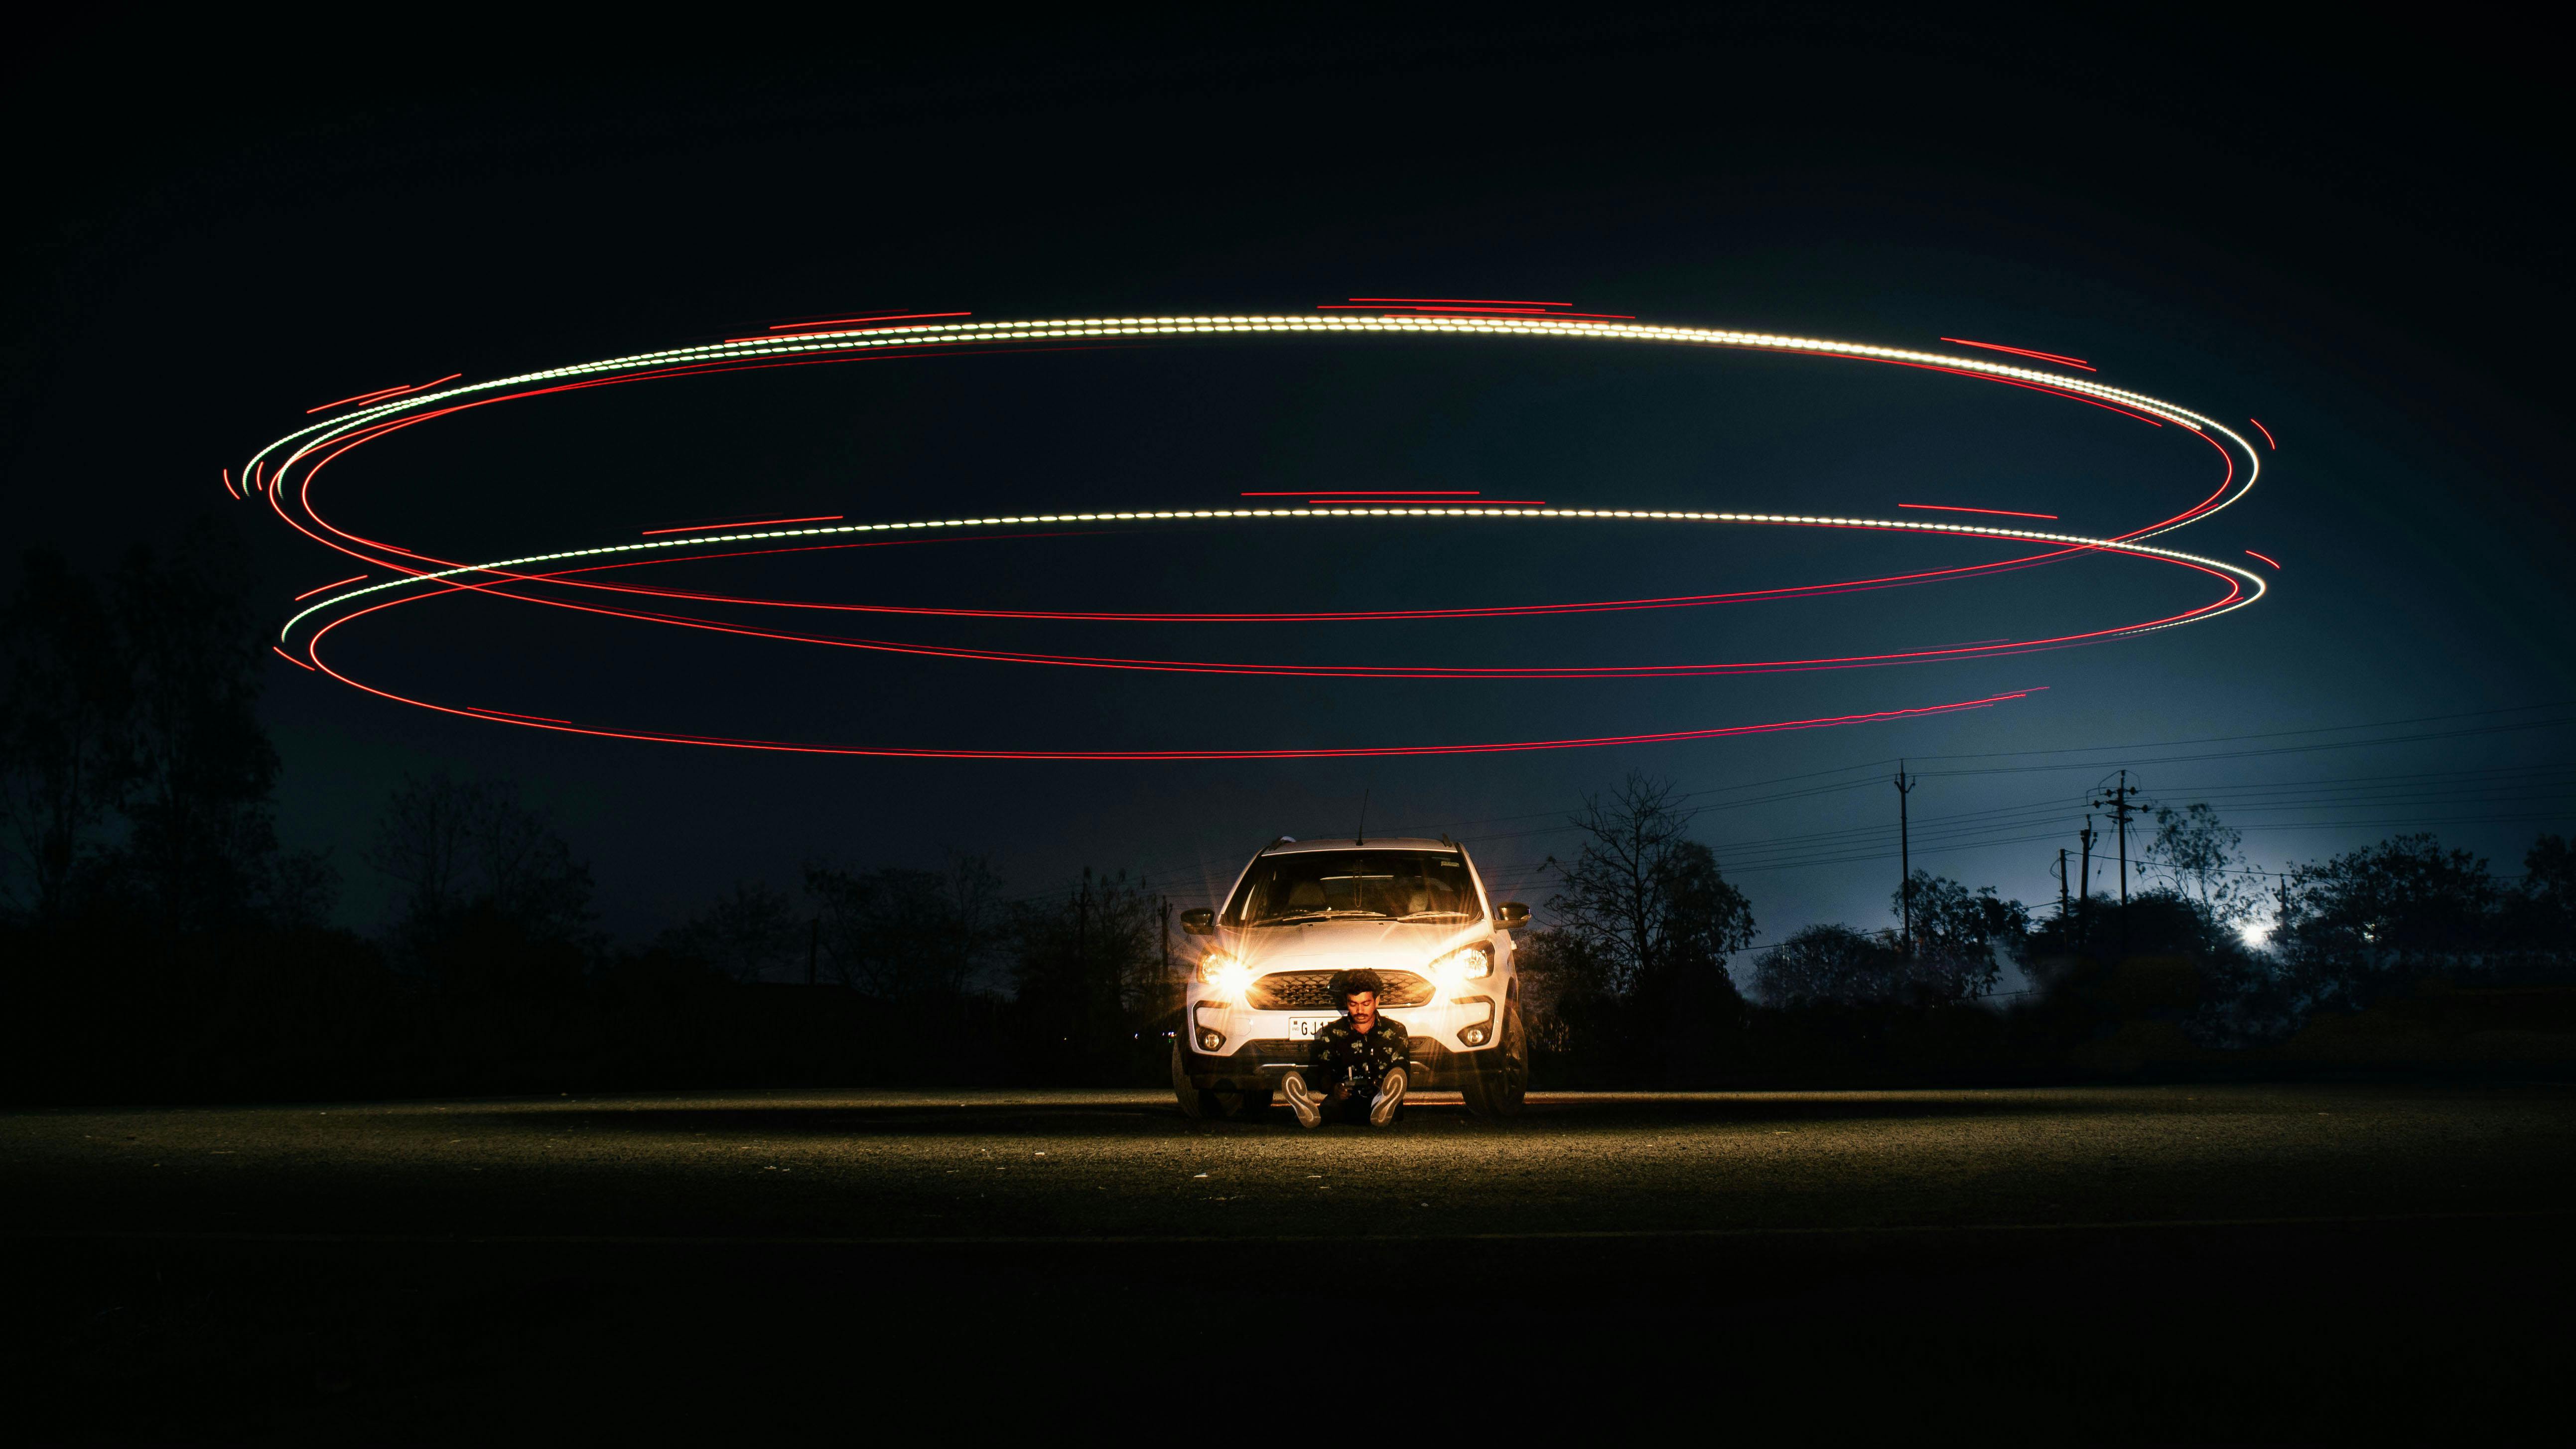 90.000+ Auto In Der Nacht Bilder und Fotos · Kostenlos Downloaden · Pexels  Stock-Fotos